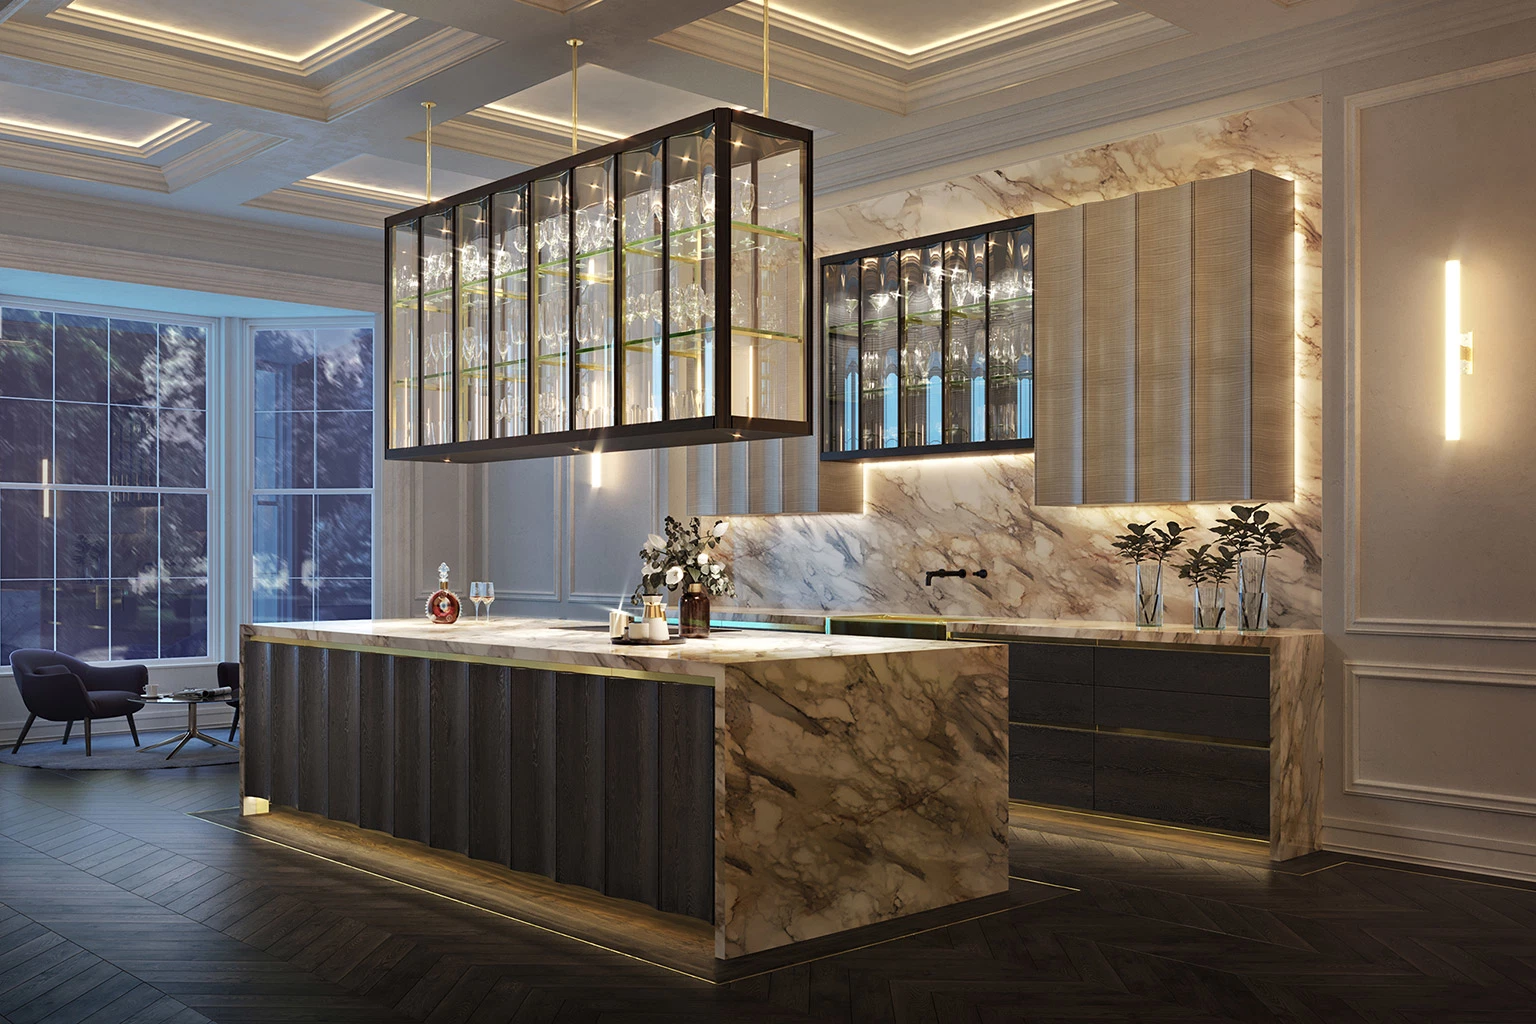 Meuble de cuisine en bois massif de luxe haut de gamme moderne avec plan de travail en marbre.